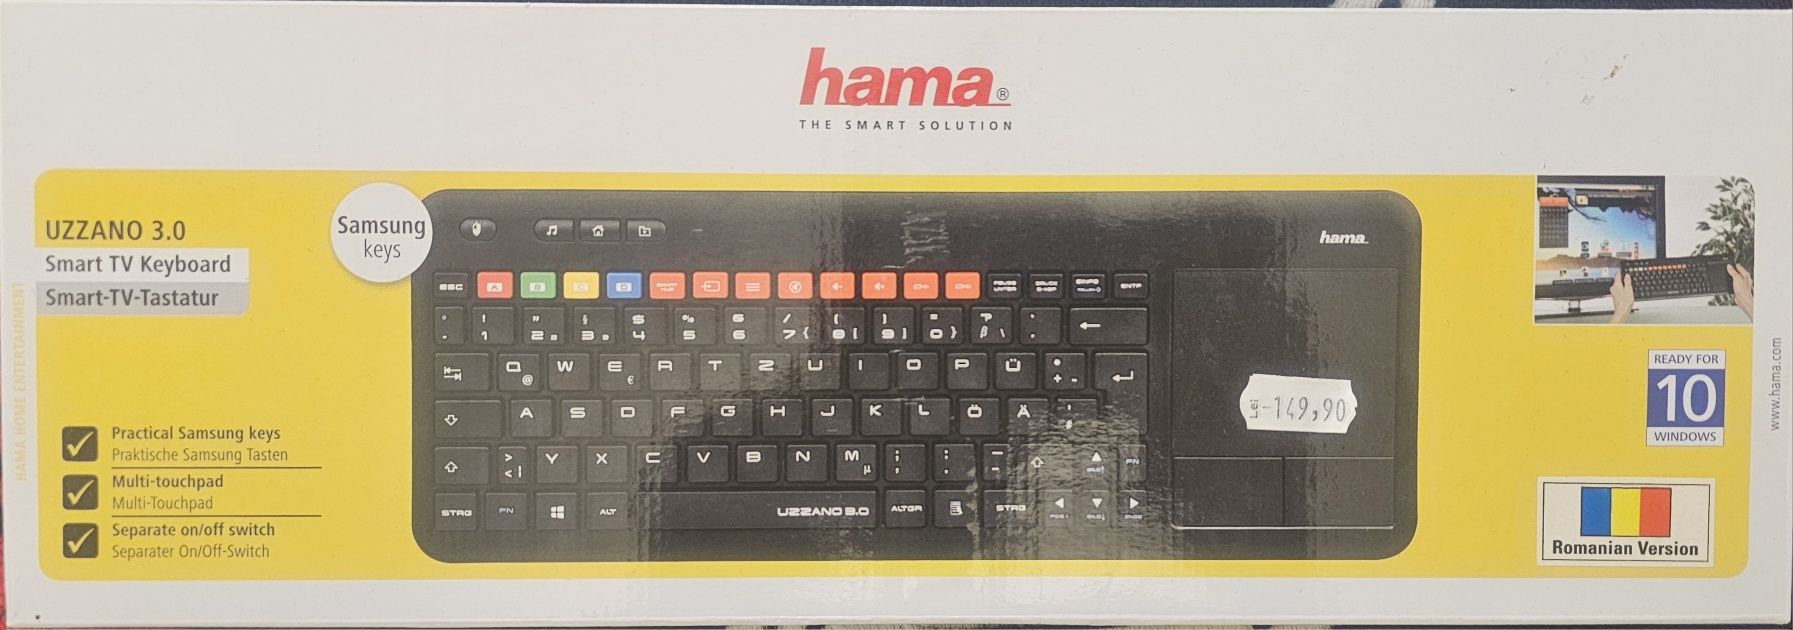 Van Tastatura Hama